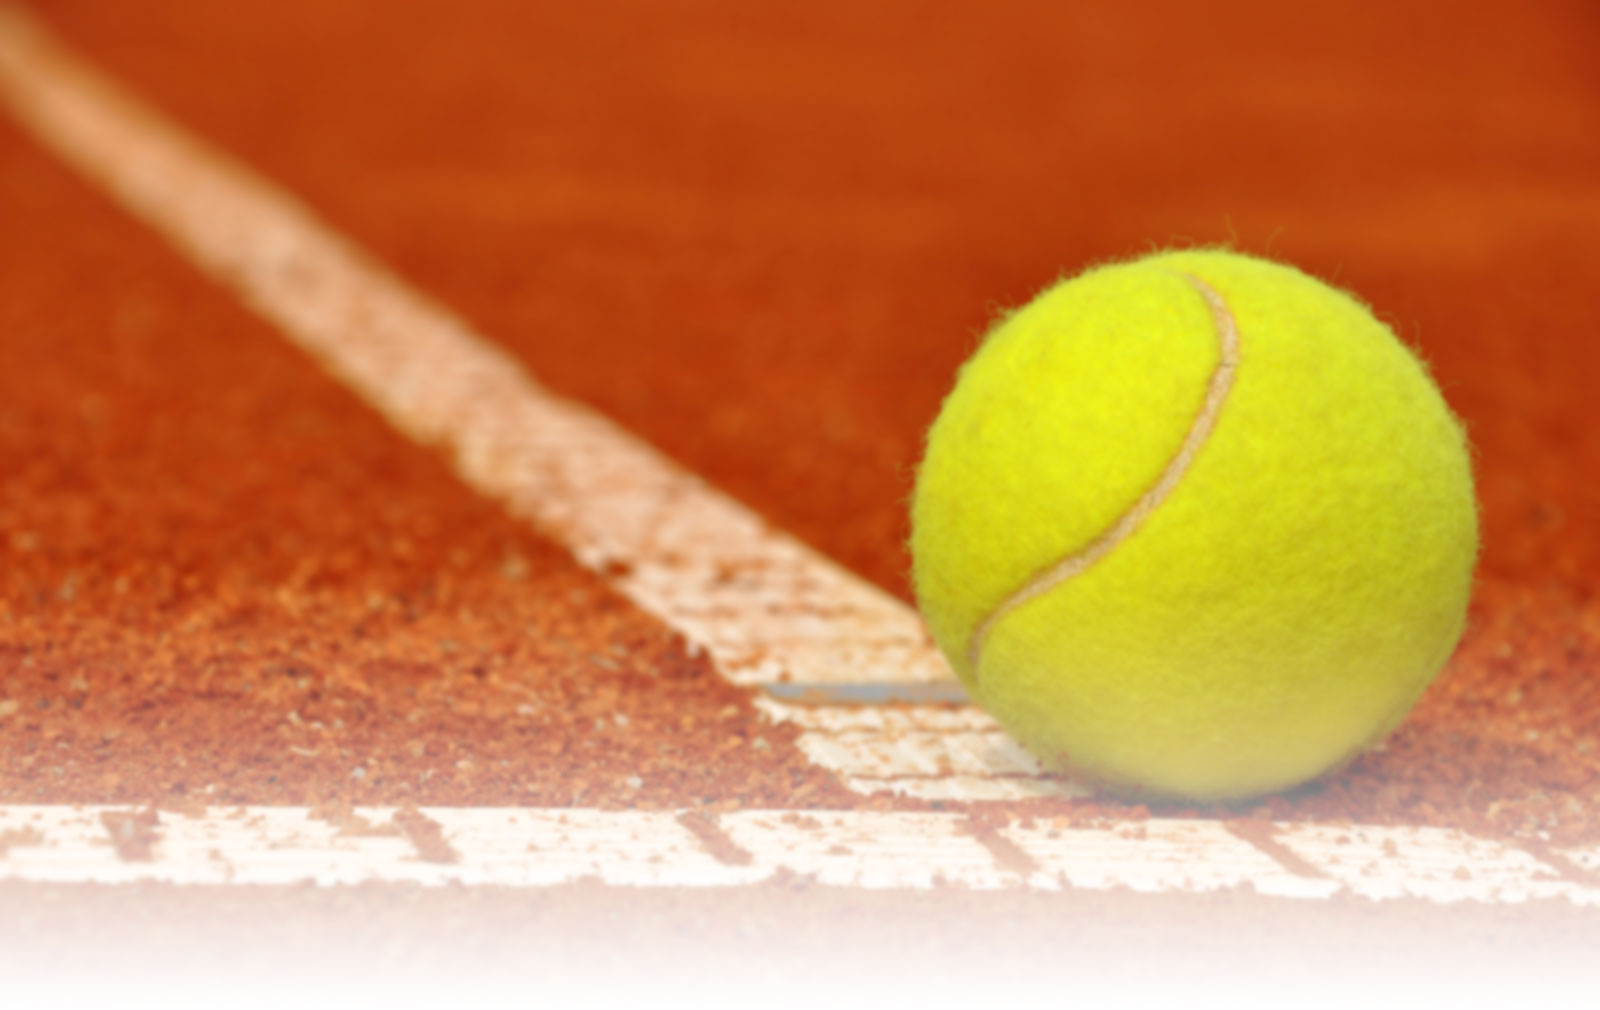  Eurosport dedica semana a três torneios exclusivos de Ténis